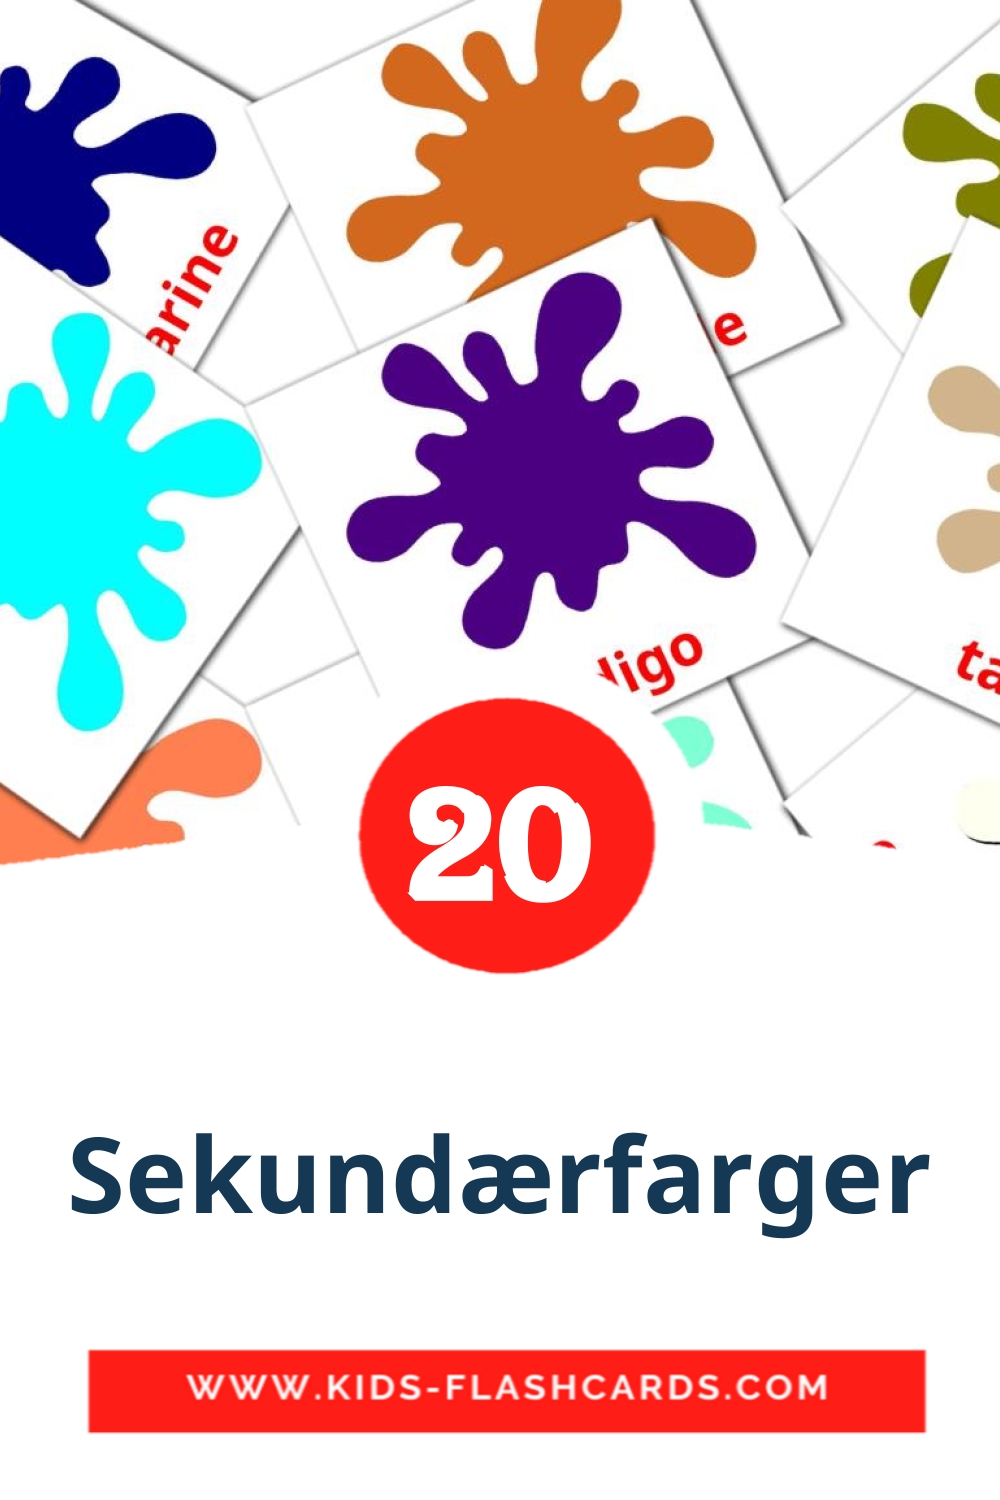 20 tarjetas didacticas de Sekundærfarger para el jardín de infancia en noruego